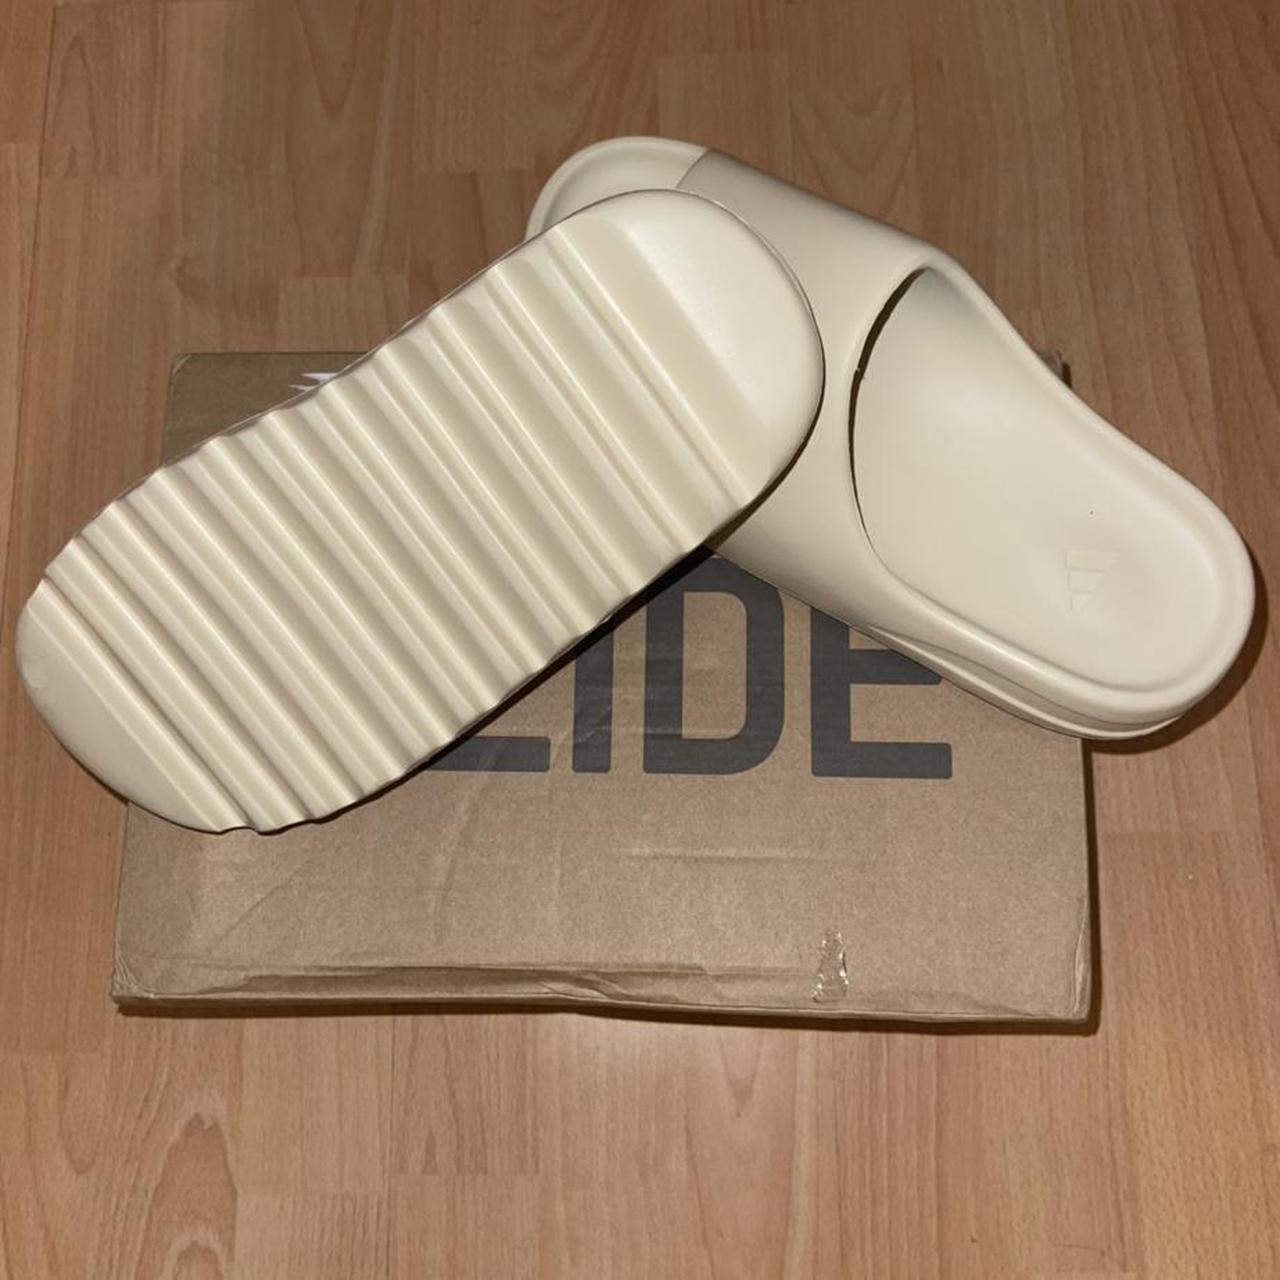 Product Image 3 - Yeezy Slides Bone White.. Best